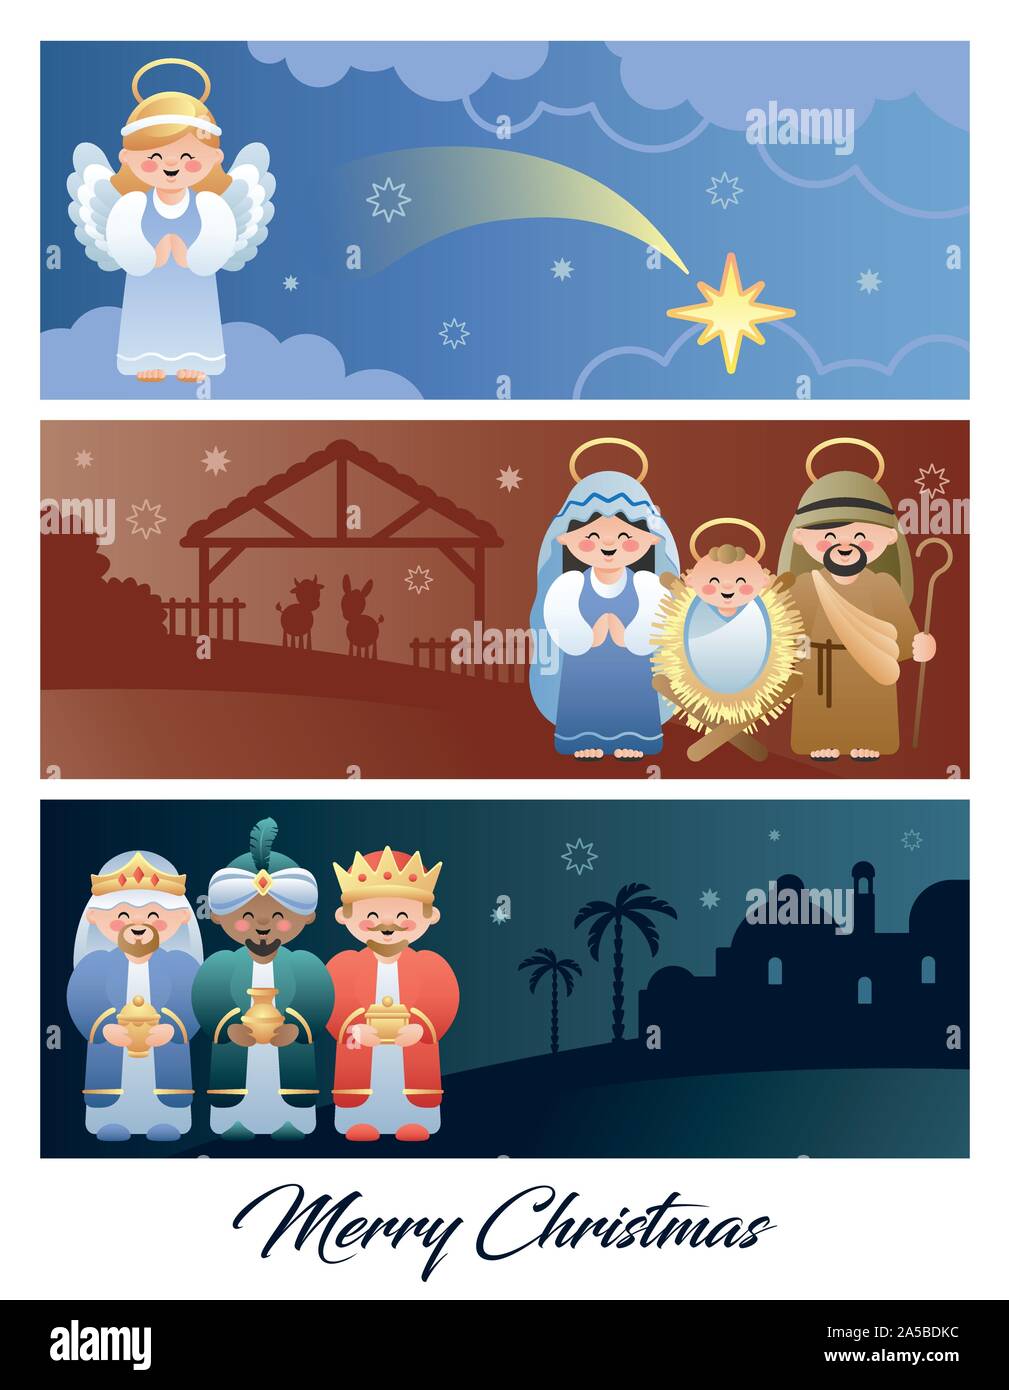 Frohe Weihnachten. Weihnachten Krippe mit der Heiligen Familie, die Engel und die Heiligen Drei Könige. Niedliche Comicfiguren. Vector Illustration. Stock Vektor